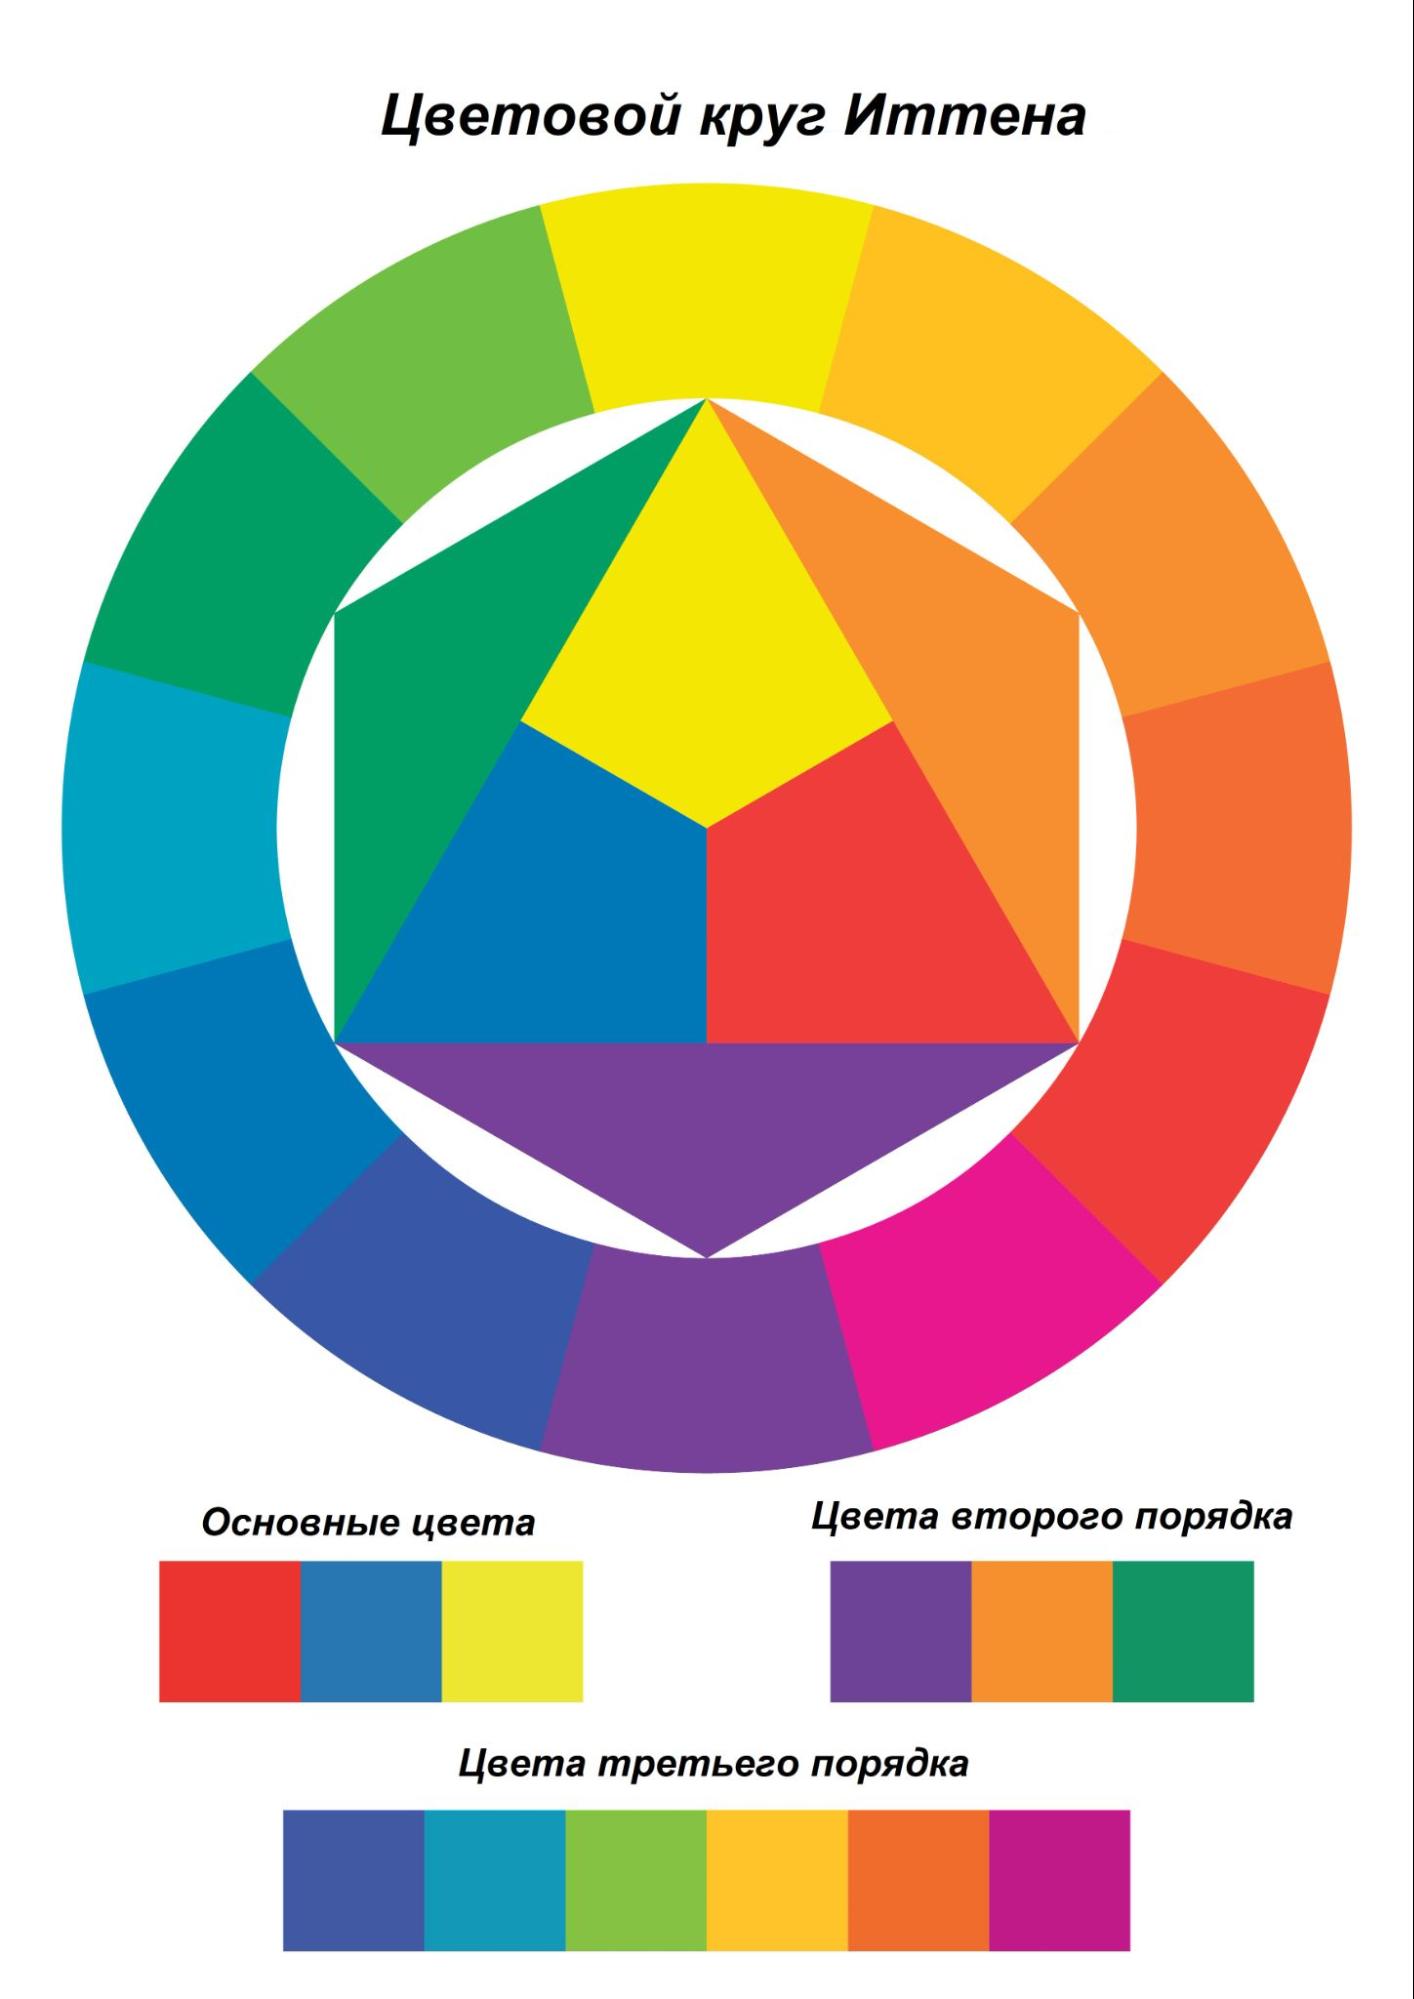 Так выглядит 12-частный круг Иттена. Три основных цвета размещены в центре круга. Если смешивать каждые два основных цвета, то получатся цвета второго порядка: желтый + красный = оранжевый, желтый + синий = зеленый, красный + синий = фиолетовый. Цвета третьего порядка &mdash; те, что во внешнем кольце круга, создаются, если смешать основные цвета и цвета второго порядка.